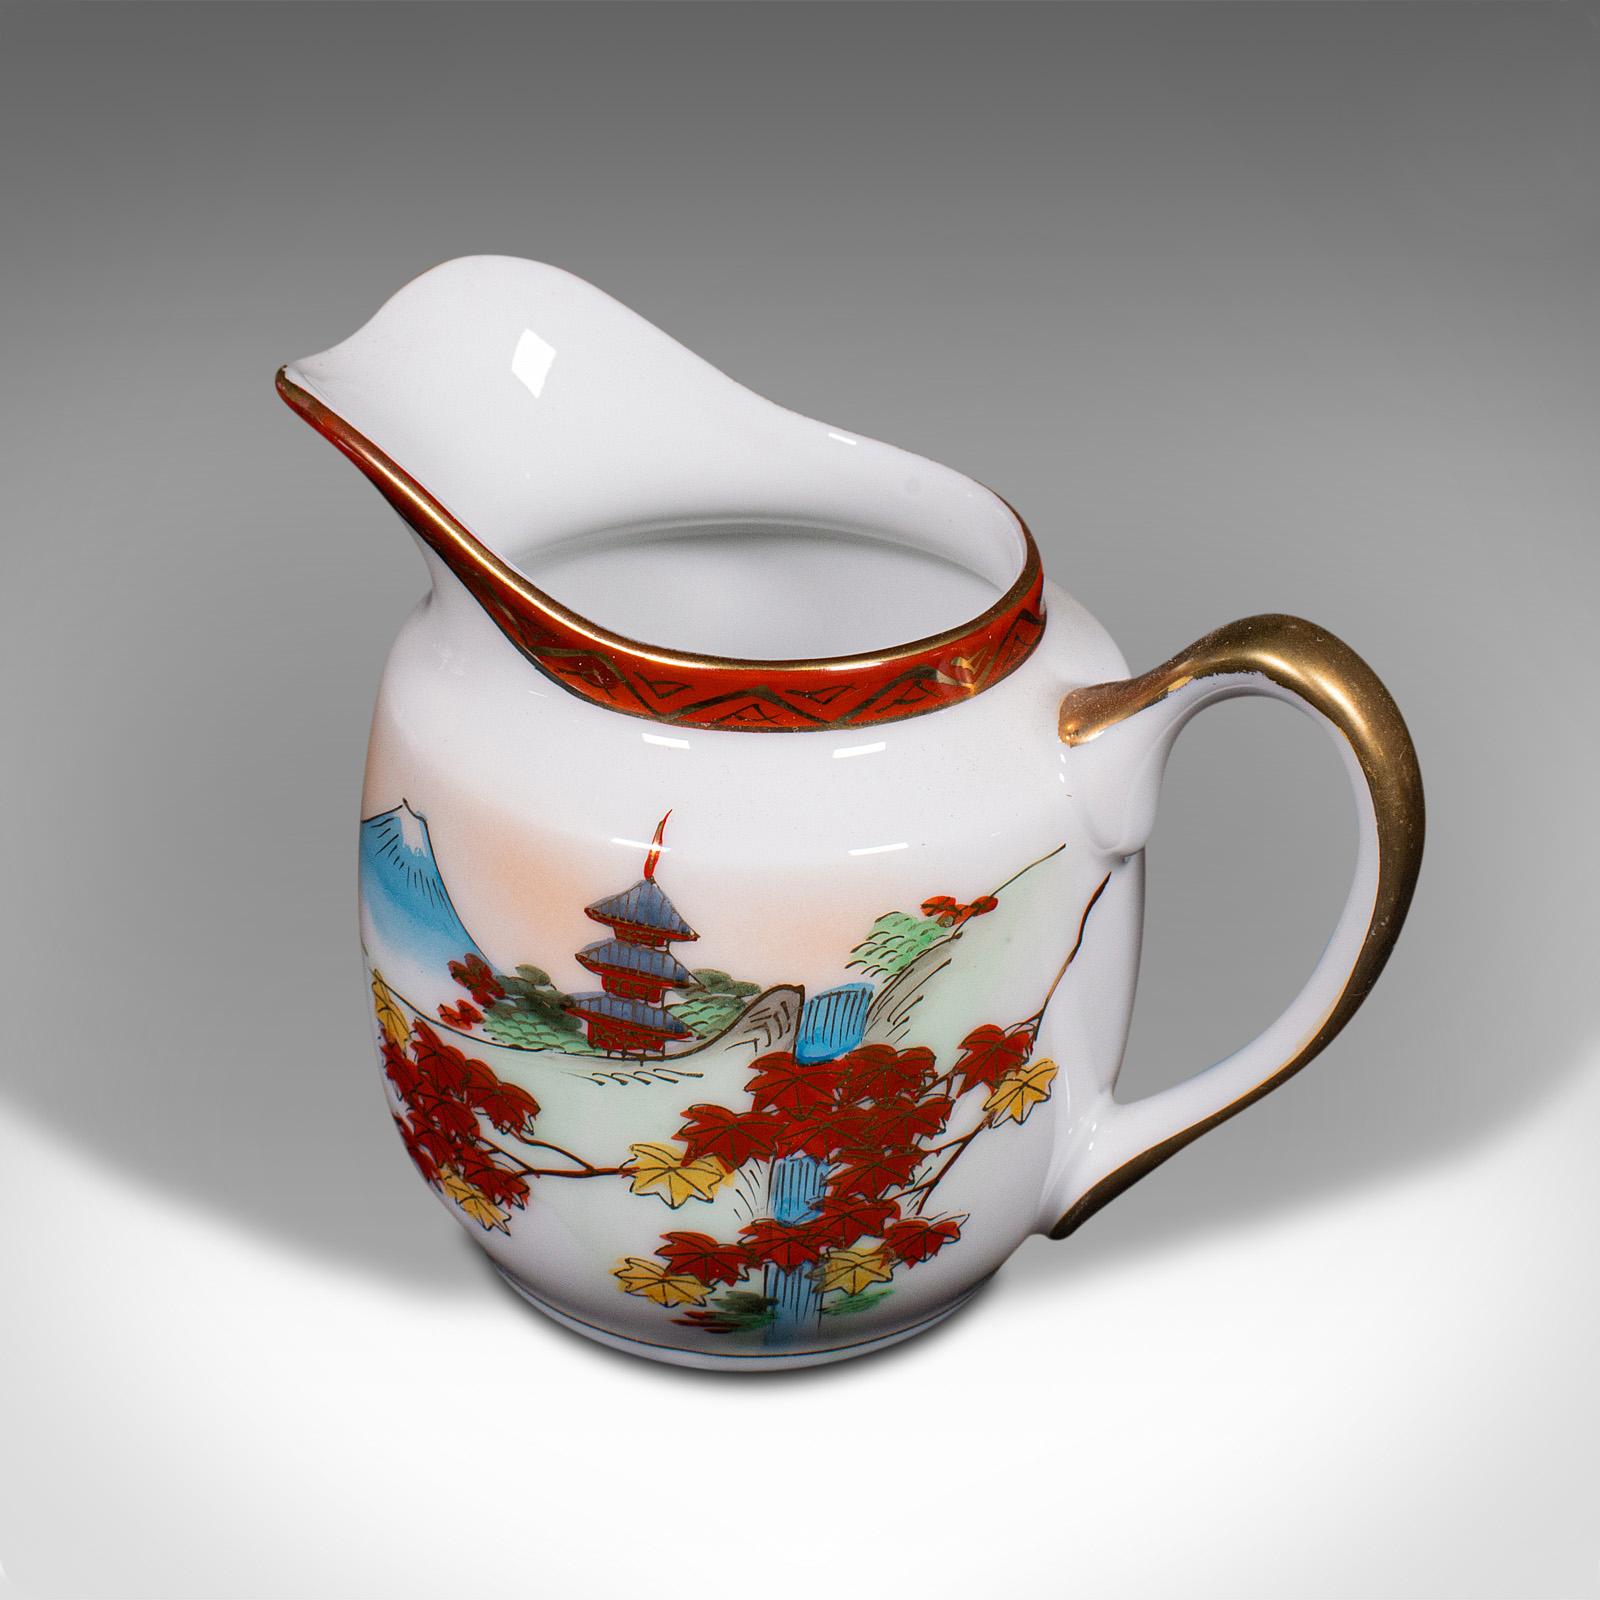 Vintage 4-person Tea Set, Japanese, Ceramic, Teapot, Cups, After Arita, Art Deco For Sale 4